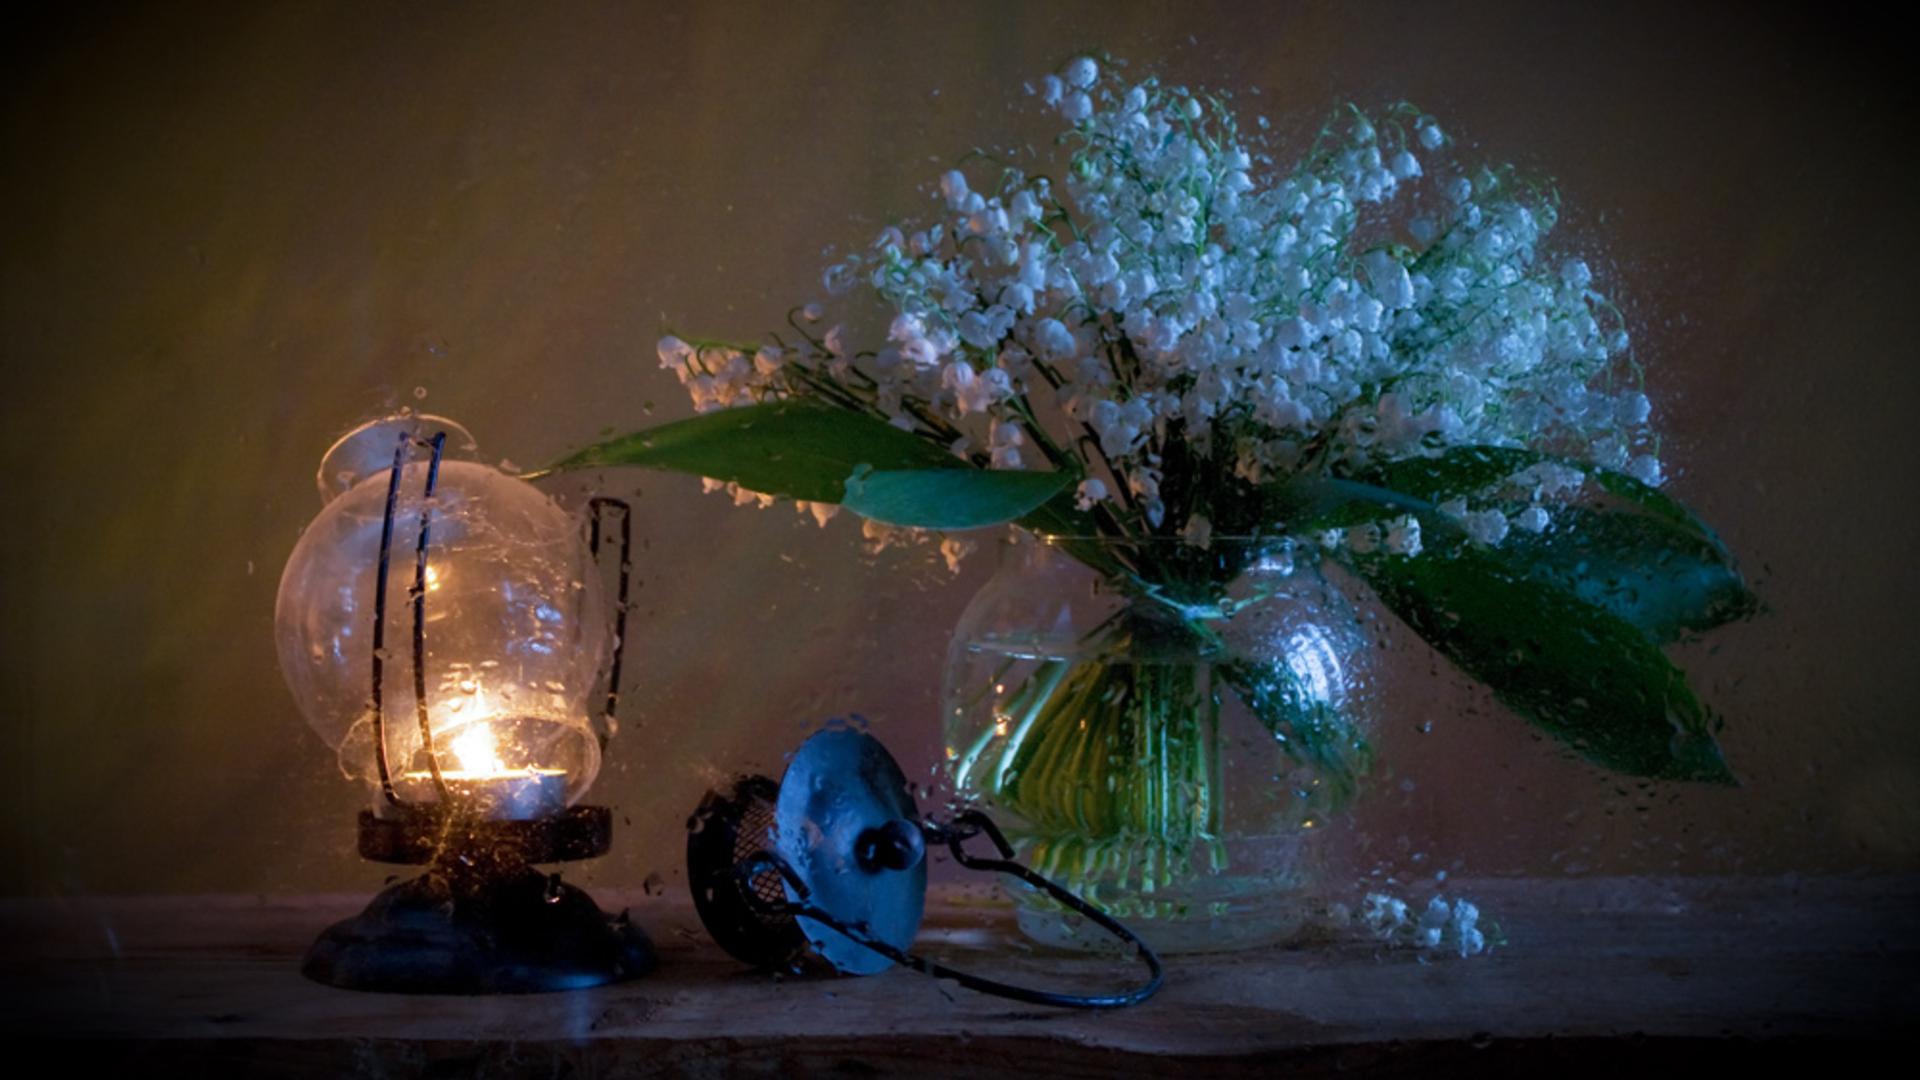 Цветы, ваза, лампа обои для рабочего стола, картинки, фото, 1920x1080.